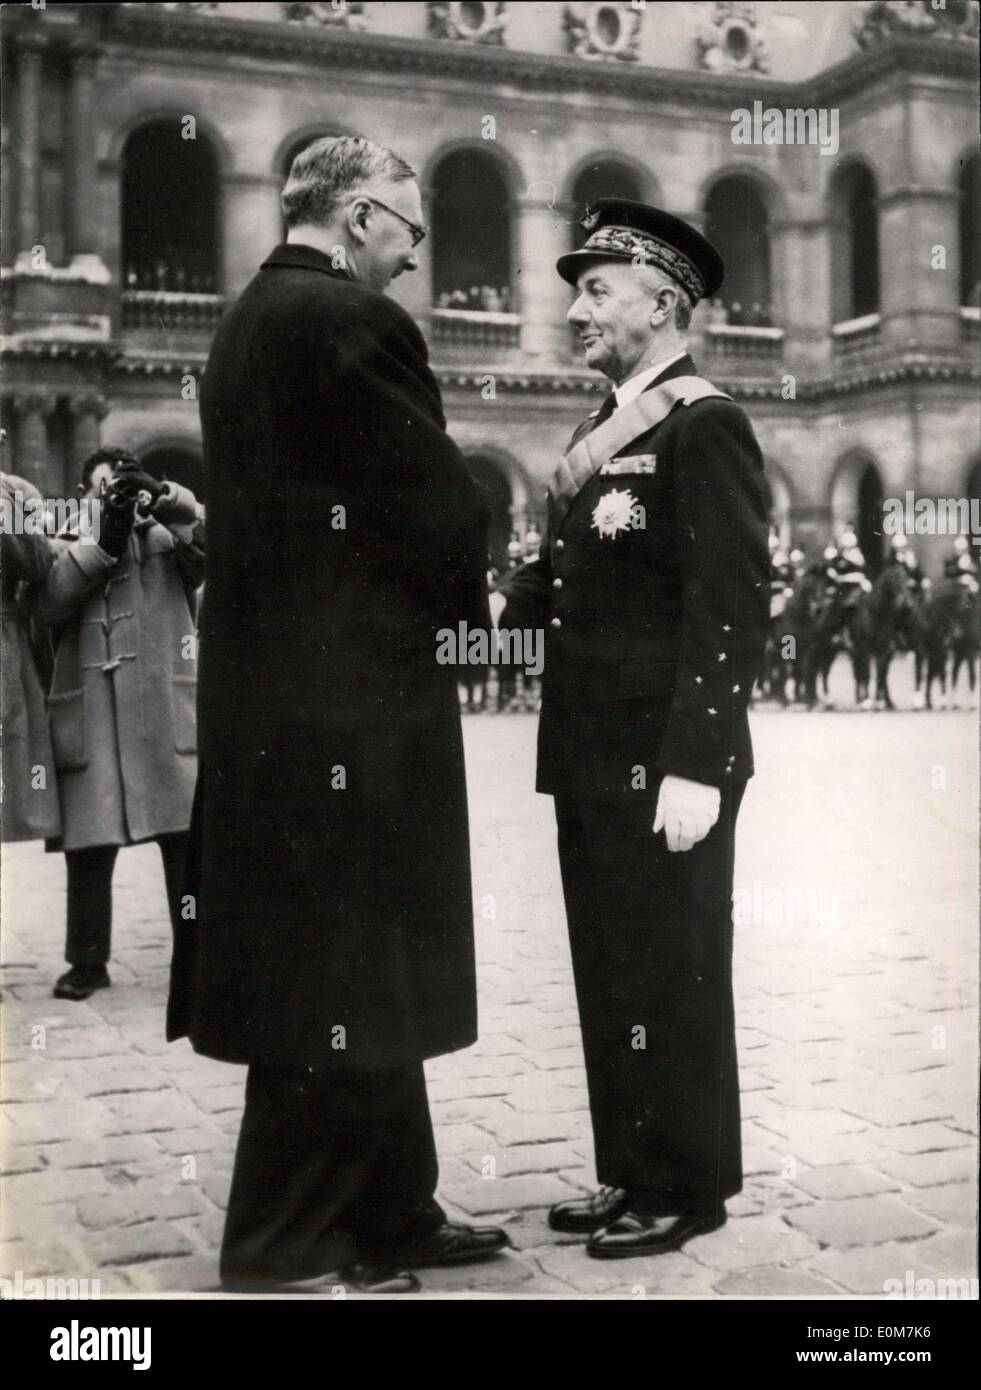 Nov. 21, 1953 - Capo della forza aerea francese aggiudicati gran croce di Ligion d'onore: M. Pleven, Ministro francese della difesa nazionale, si congratula con Lechers Generale, Capo di Stato francese Air Force dopo la decorazione di lui questa mattina. Foto Stock